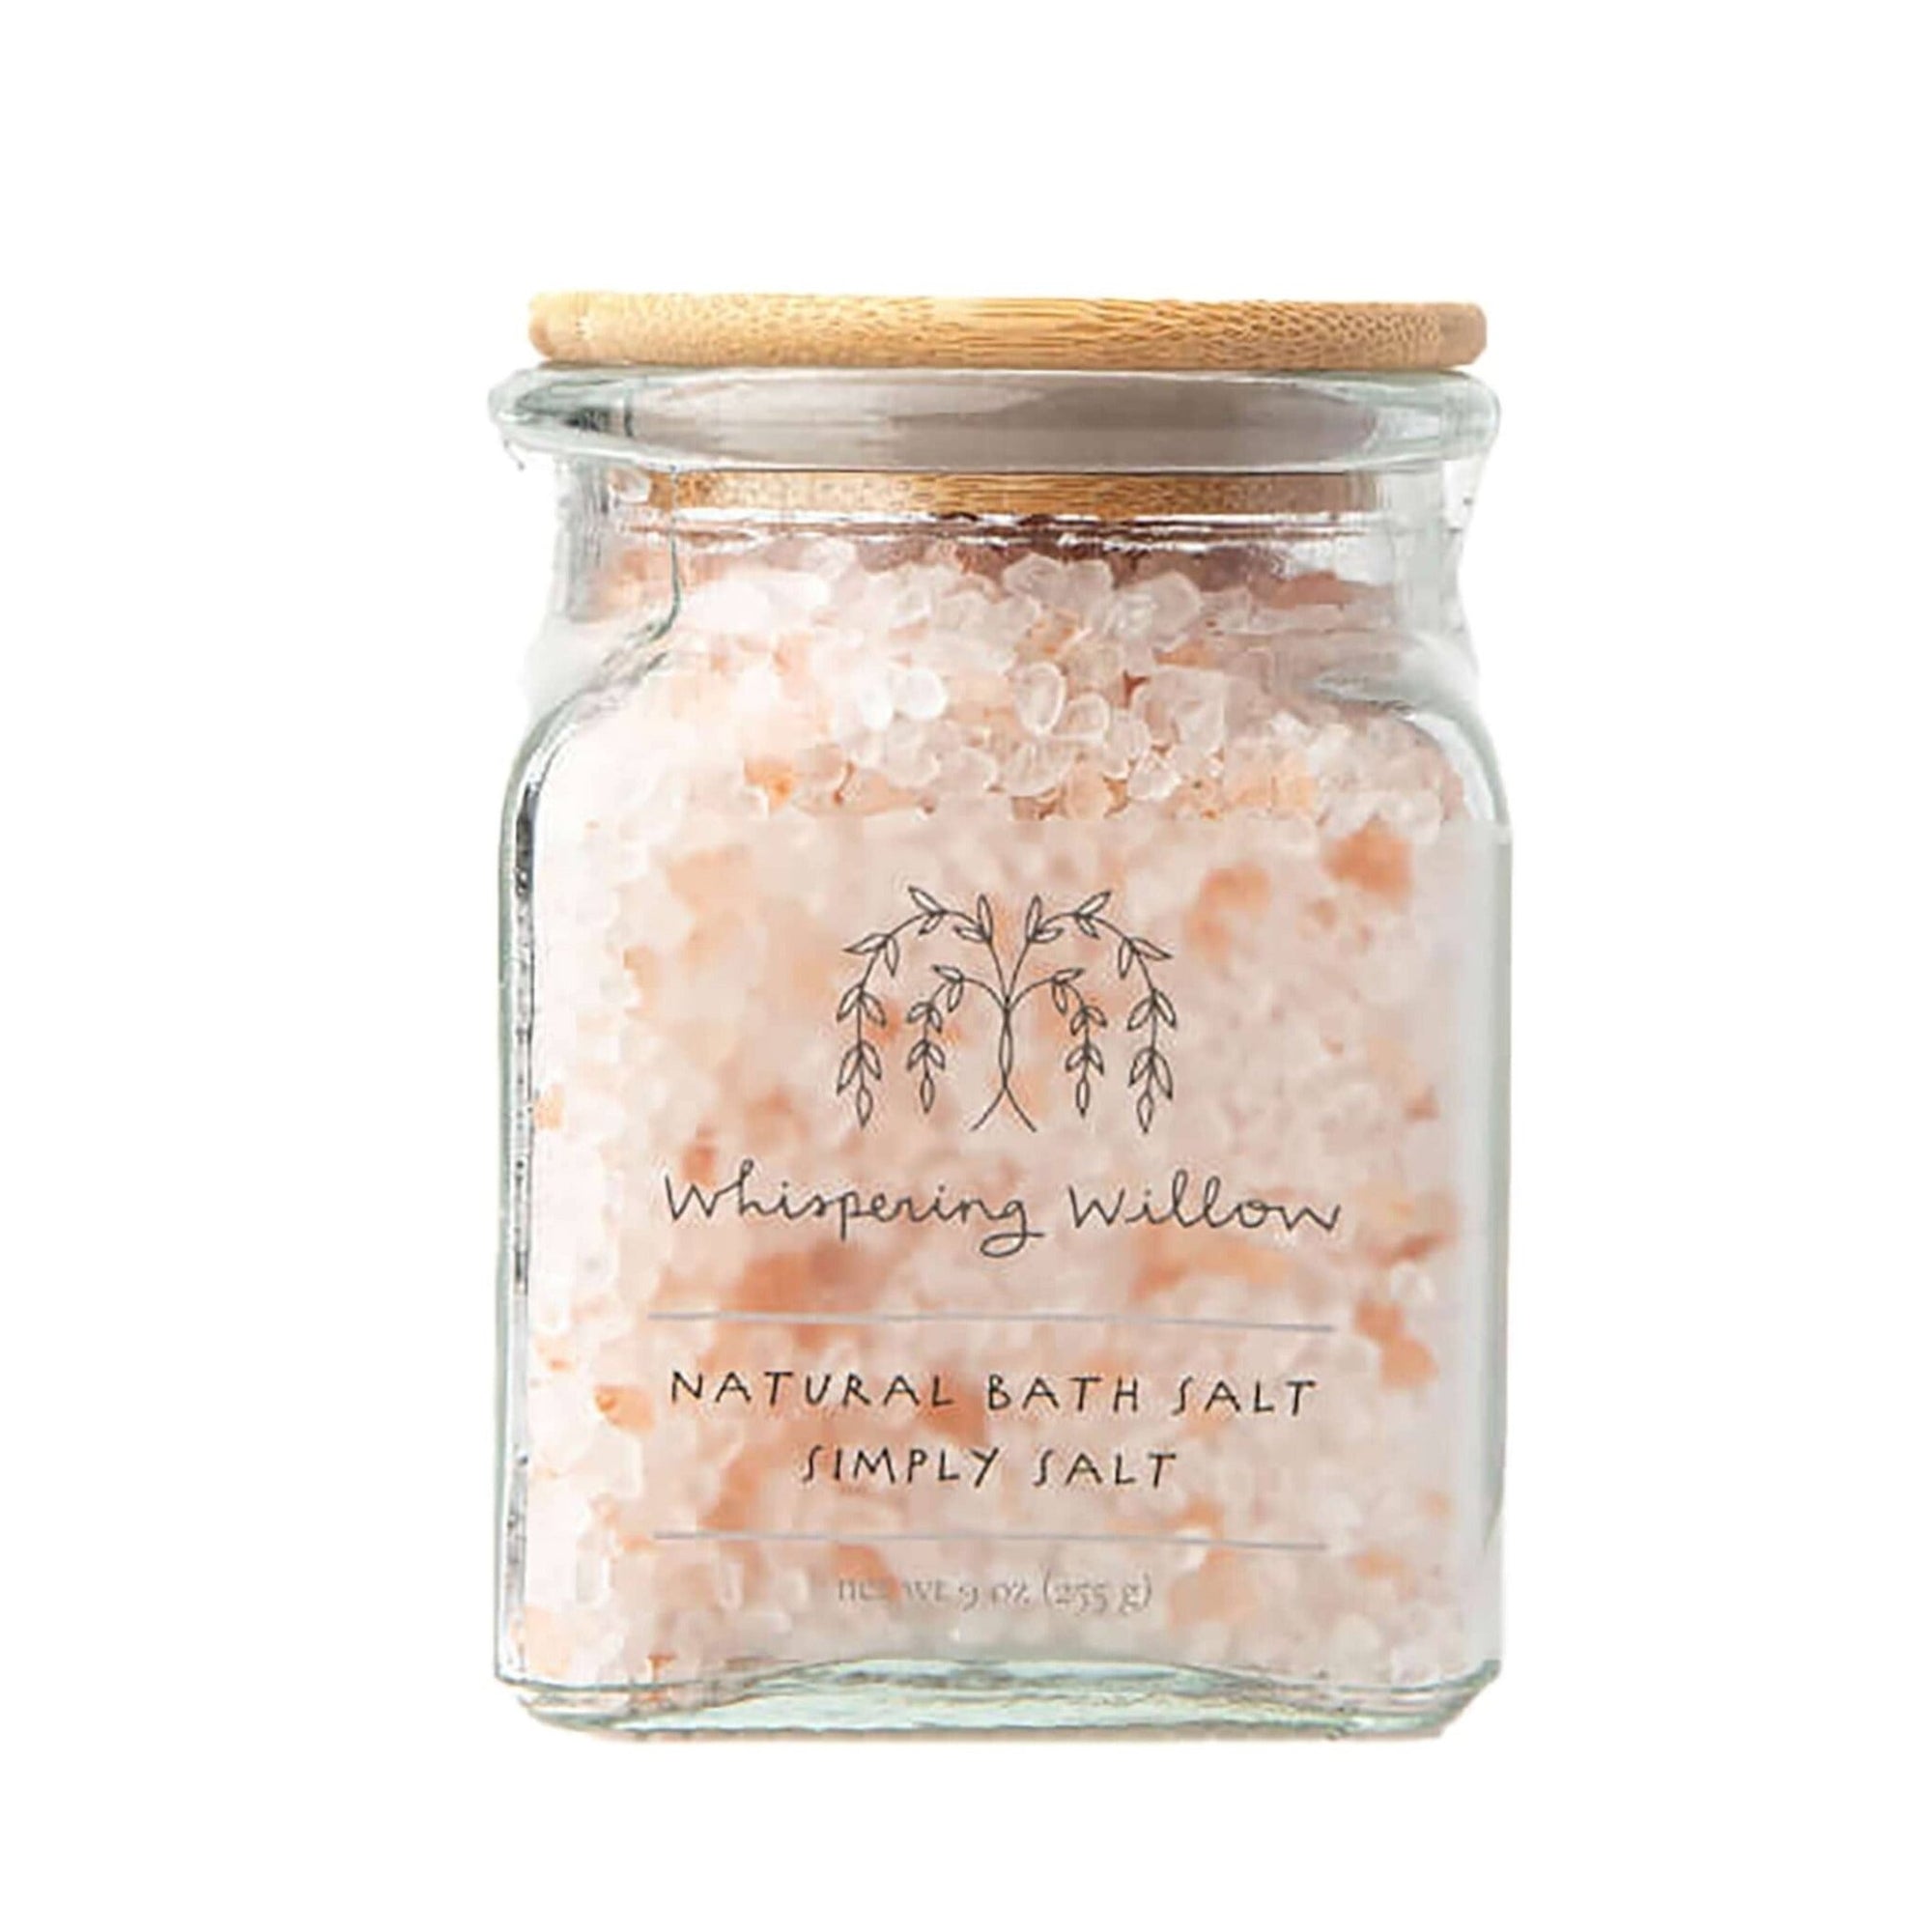 Natural Bath Salt - Simply Salt - Gift & Gather